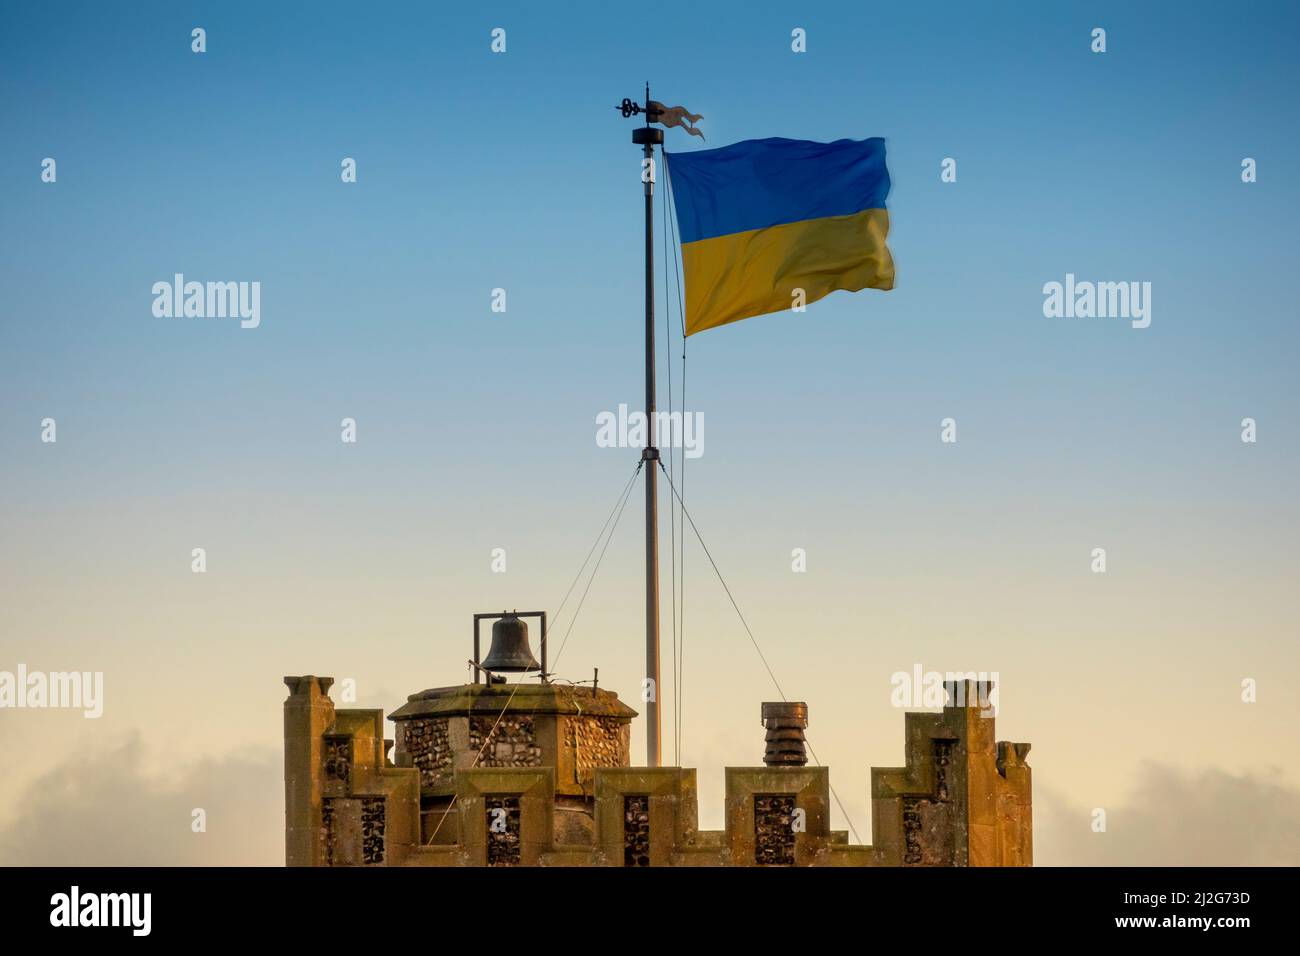 Die zweifarbige Flagge der Ukrainischen Volksrepublik, die am späten Nachmittag bei warmem Licht vom Kirchturm von St. Peter und St. Paul's, Aldeburgh, weht Stockfoto